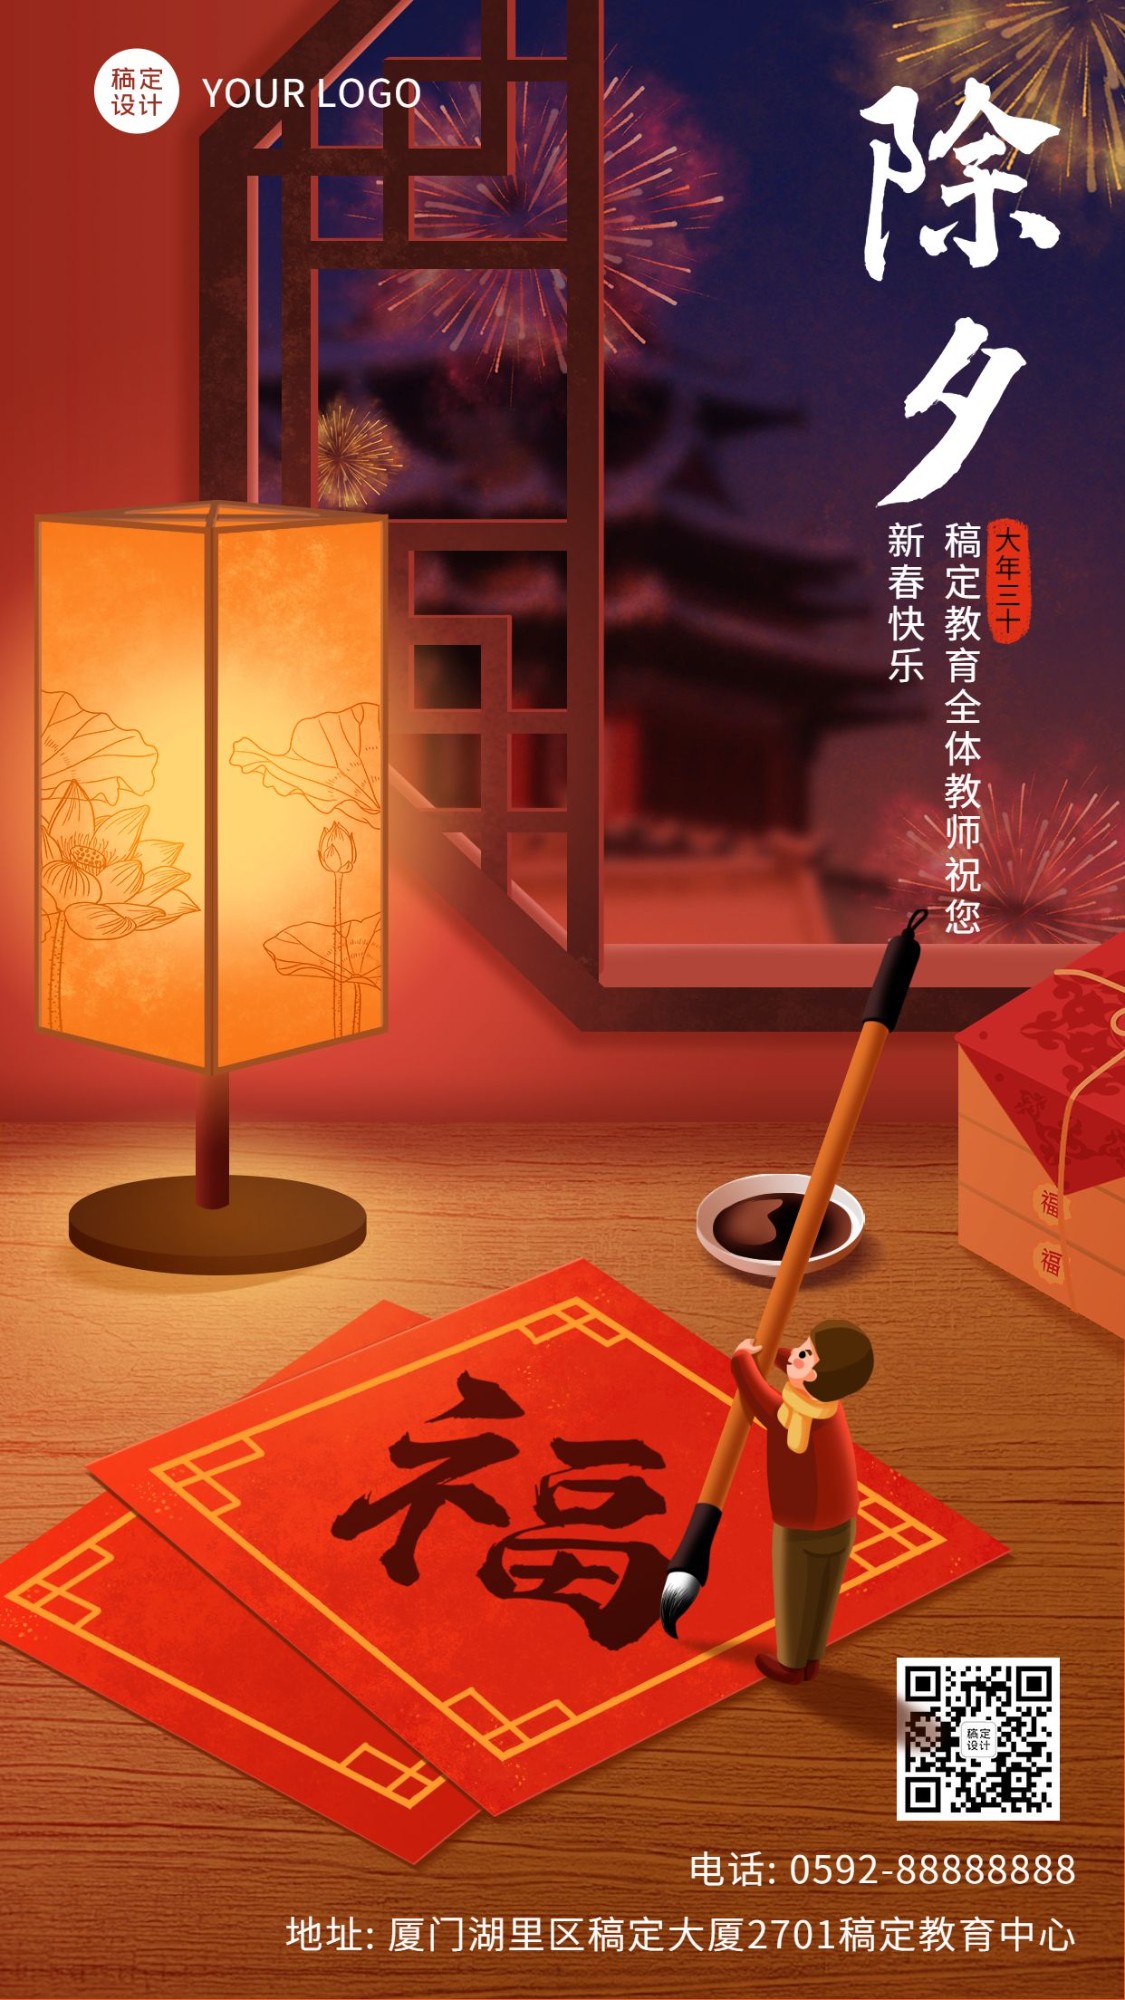 春节除夕祝福宣传海报预览效果